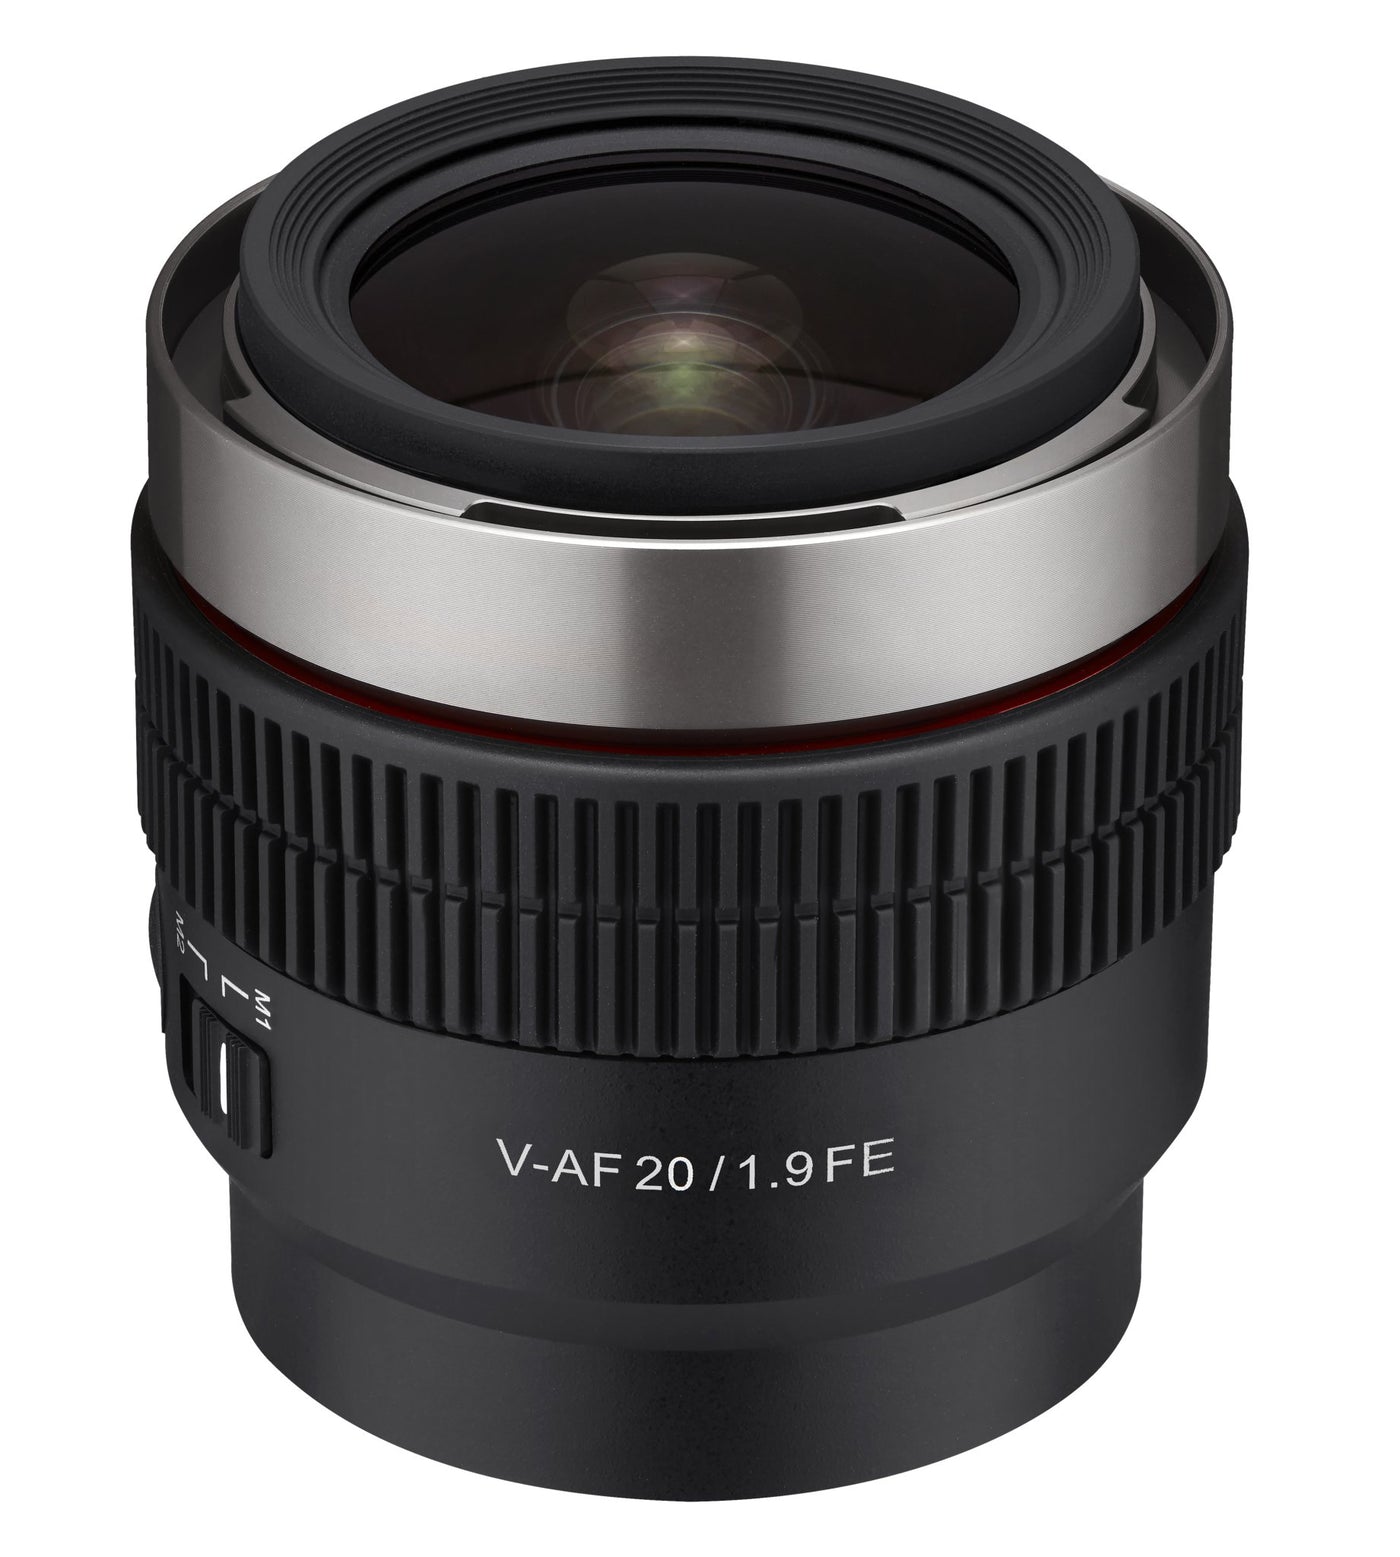 20mm T1.9 Full Frame Cine Auto Focus for Sony E - Rokinon Lenses - CAF20-NEX